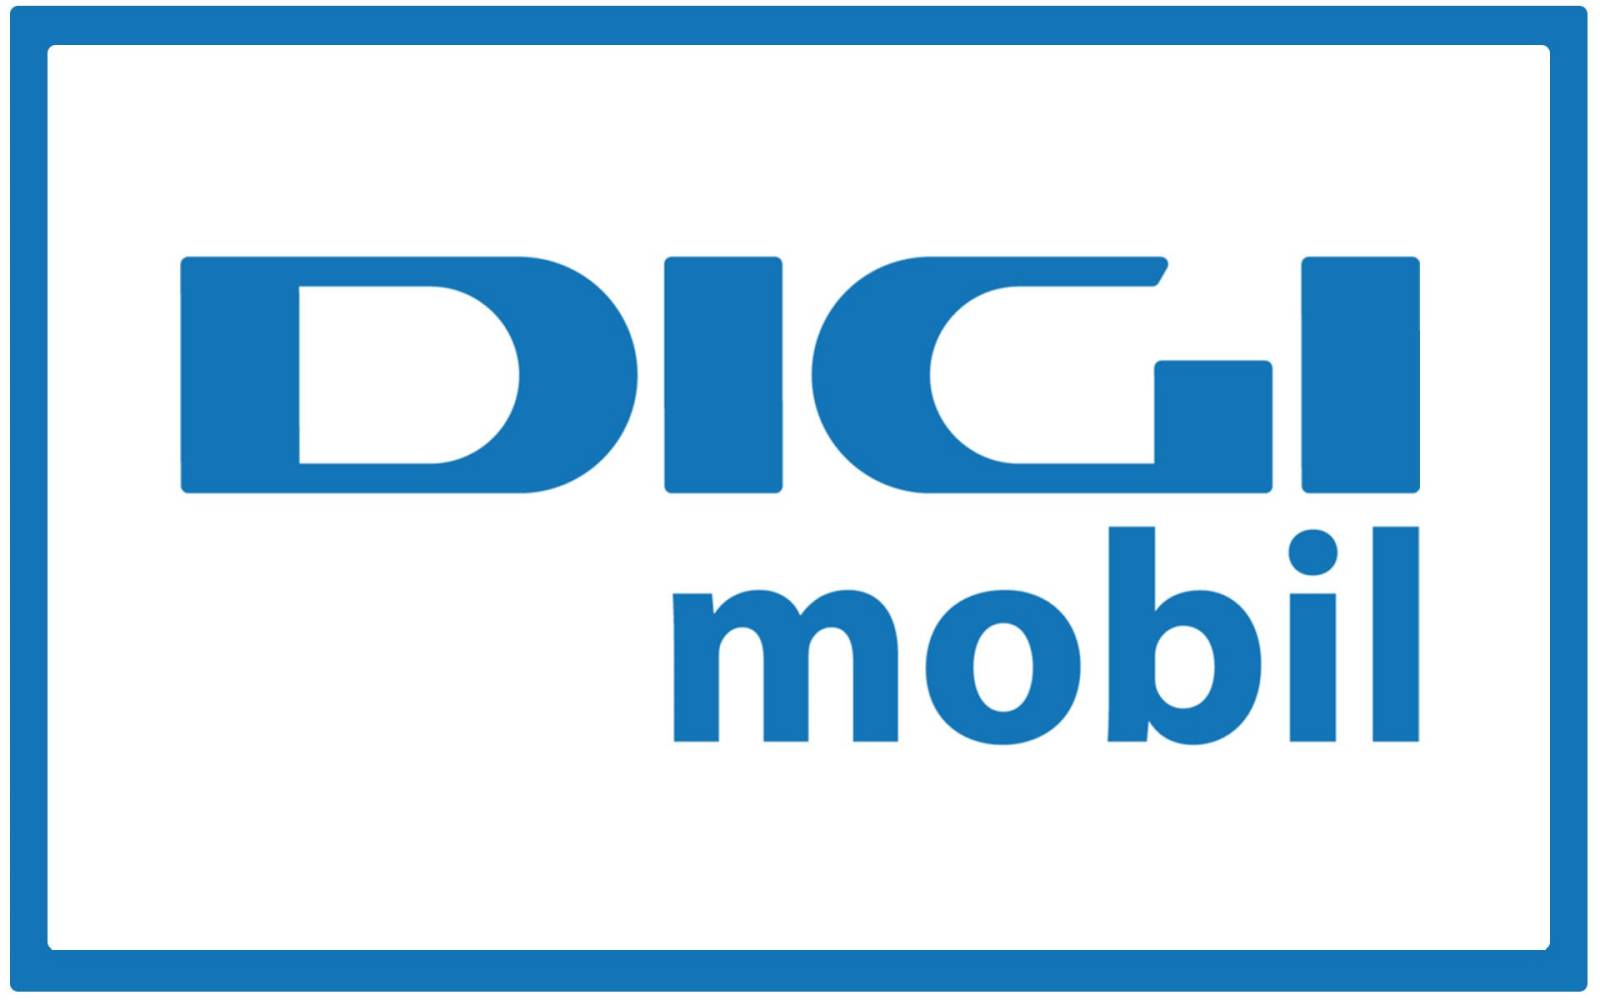 El cambio radical de Digi Mobile afecta a los clientes.